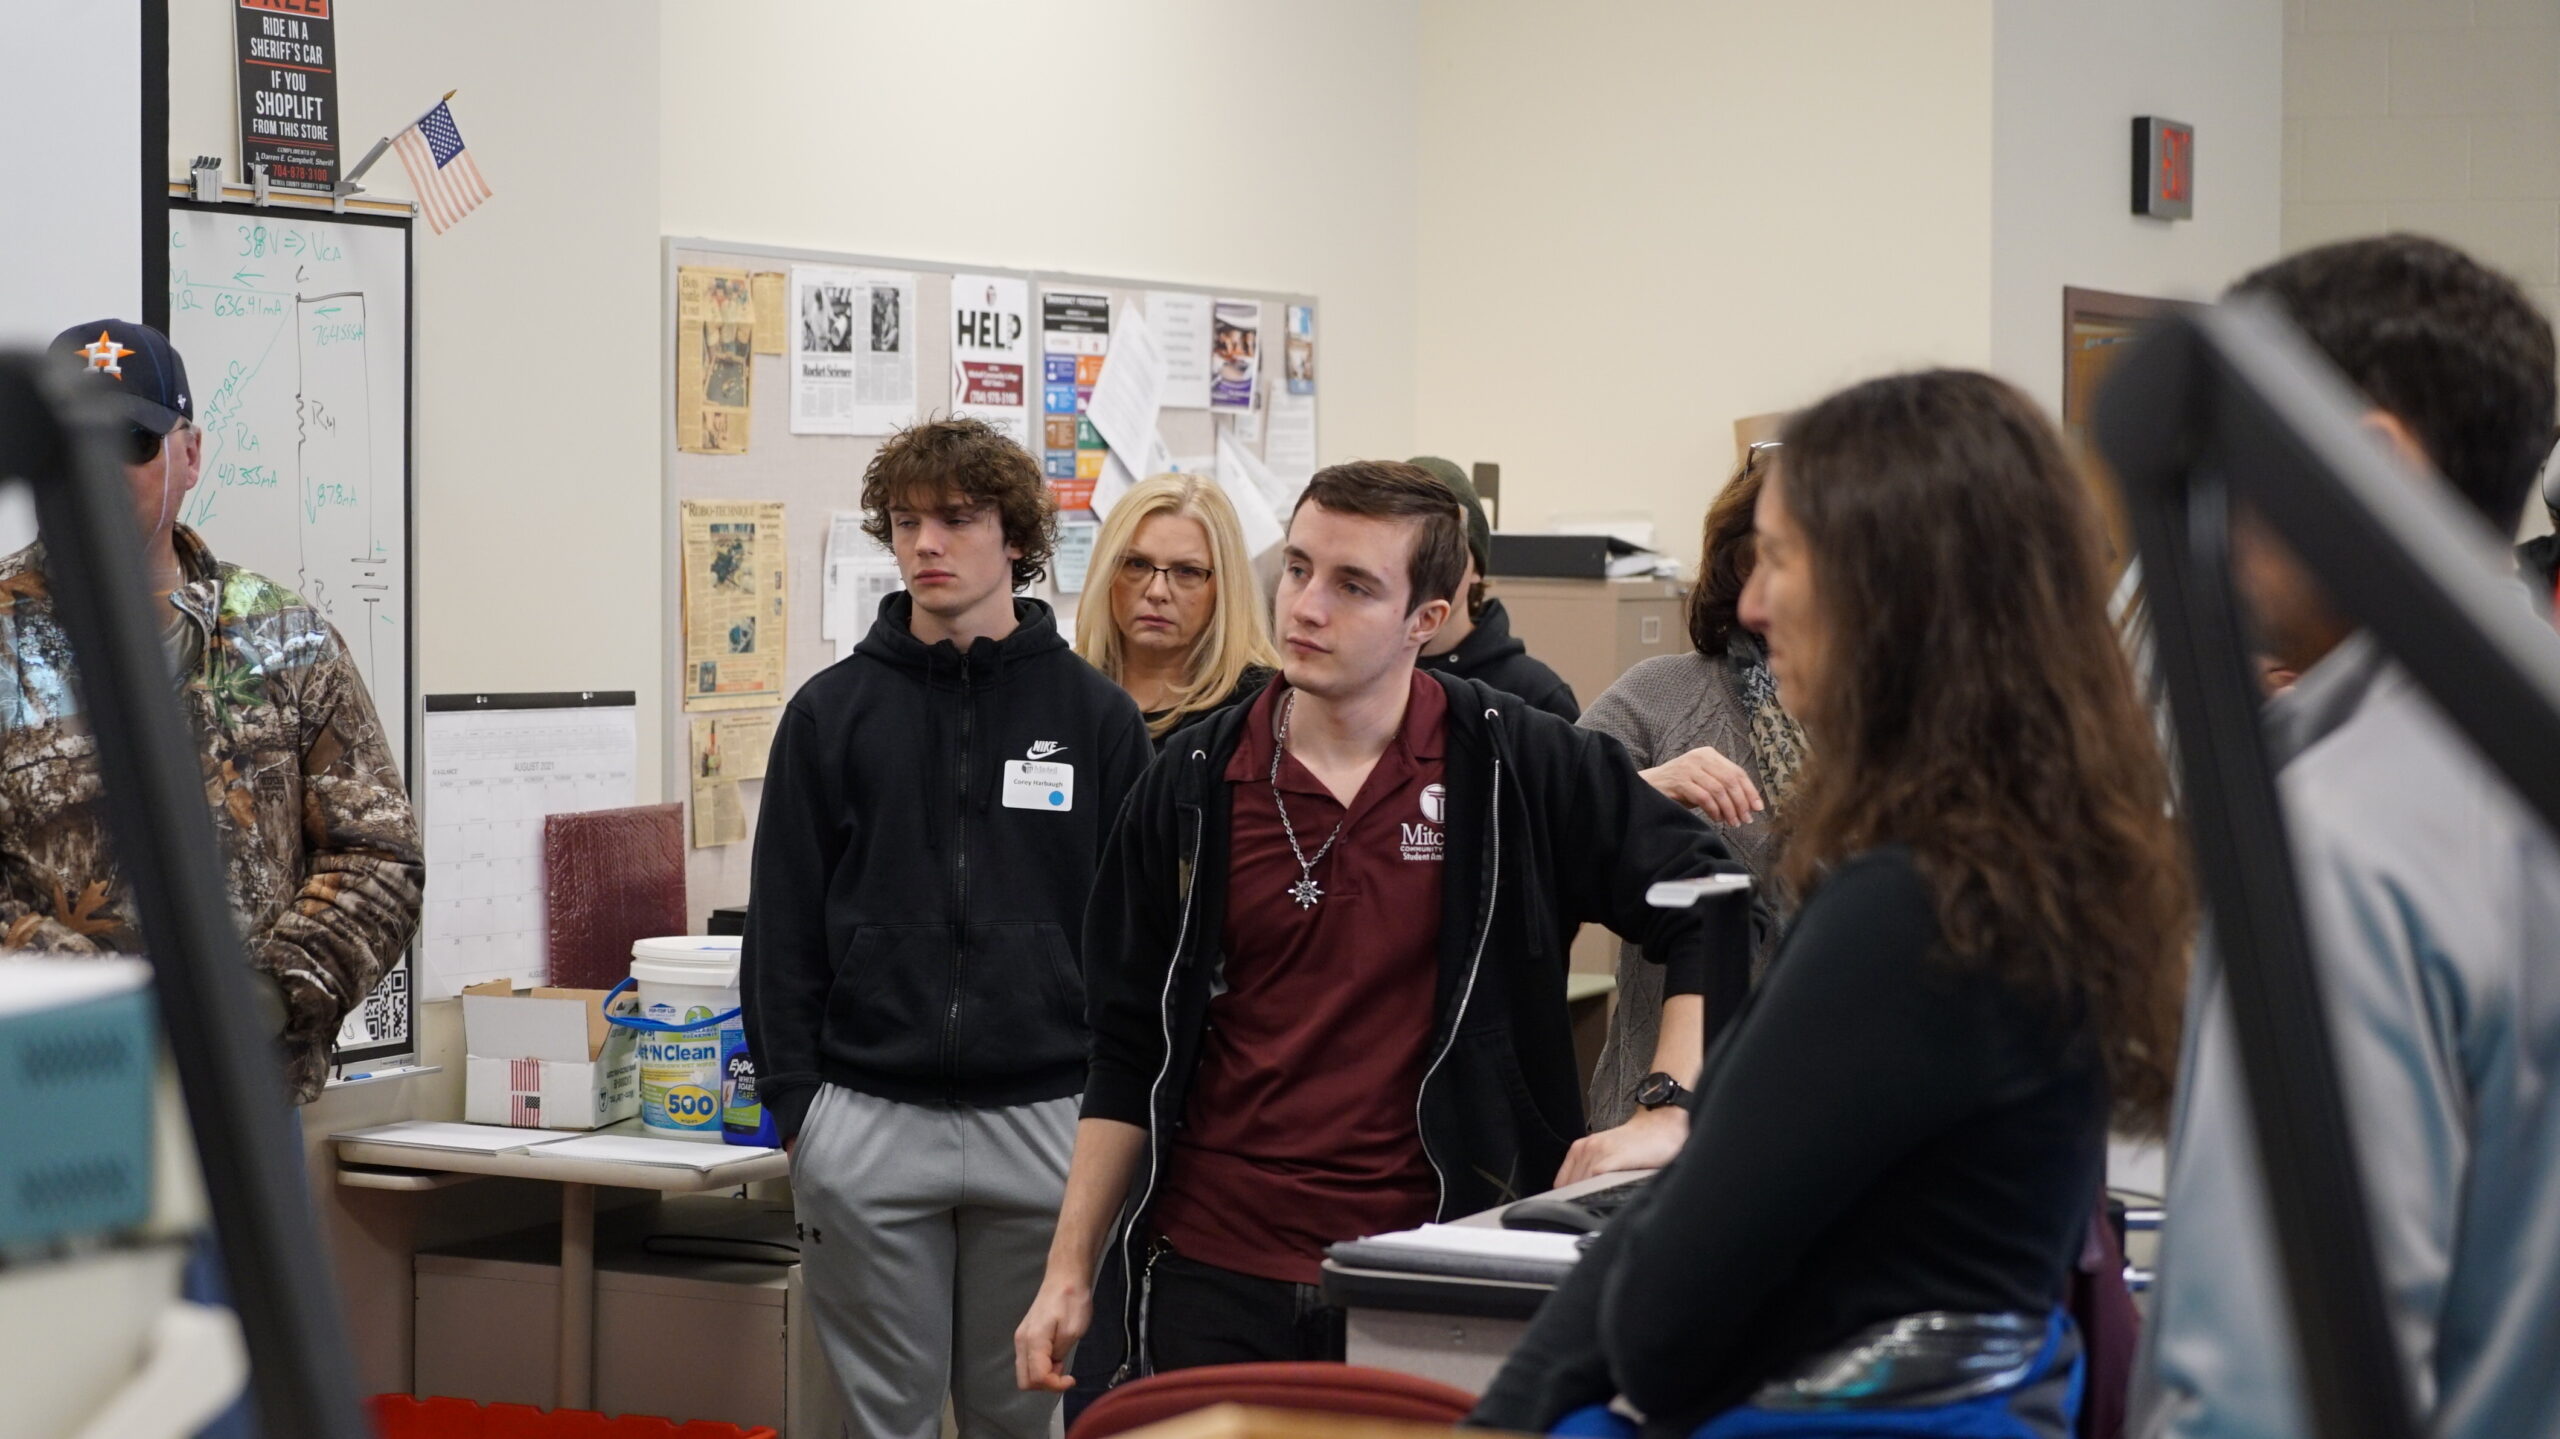 Potencjalni studenci Mitchell słuchający prezentacji podczas wycieczki po kampusie.